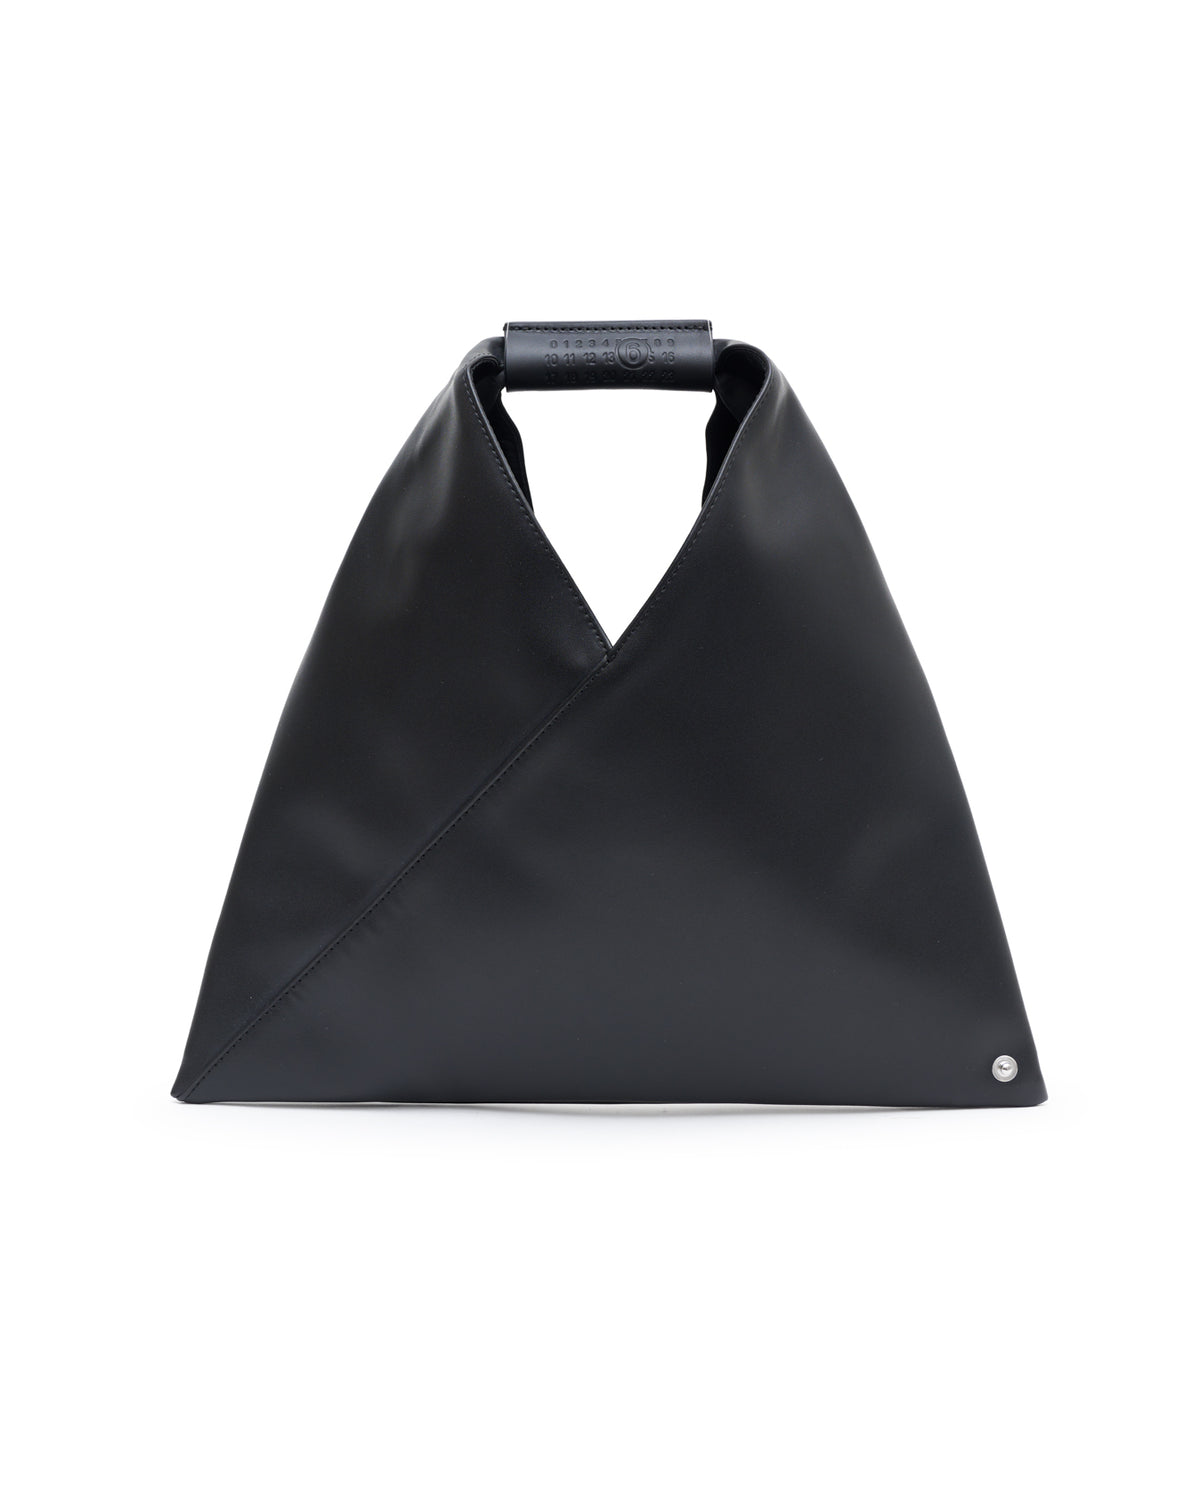 Mini Japanese Handbag  - Black